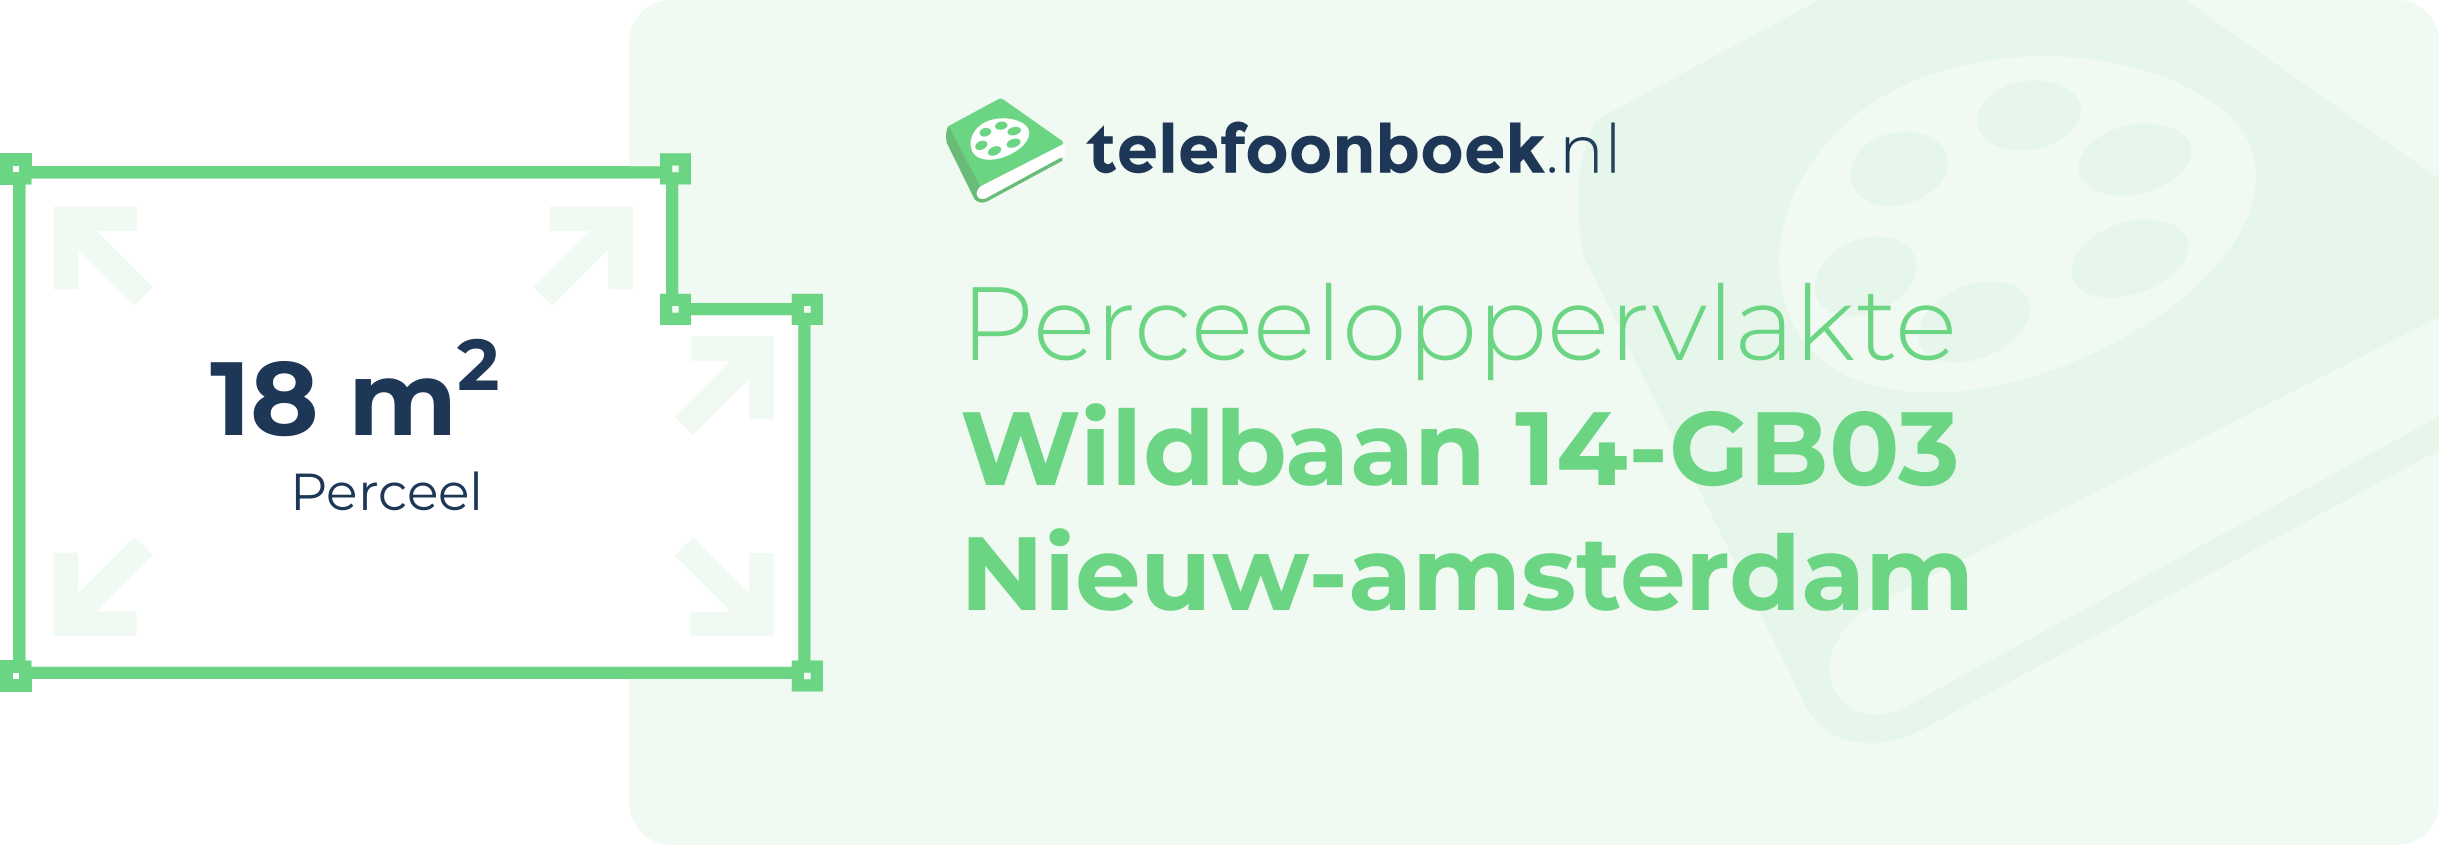 Perceeloppervlakte Wildbaan 14-GB03 Nieuw-Amsterdam